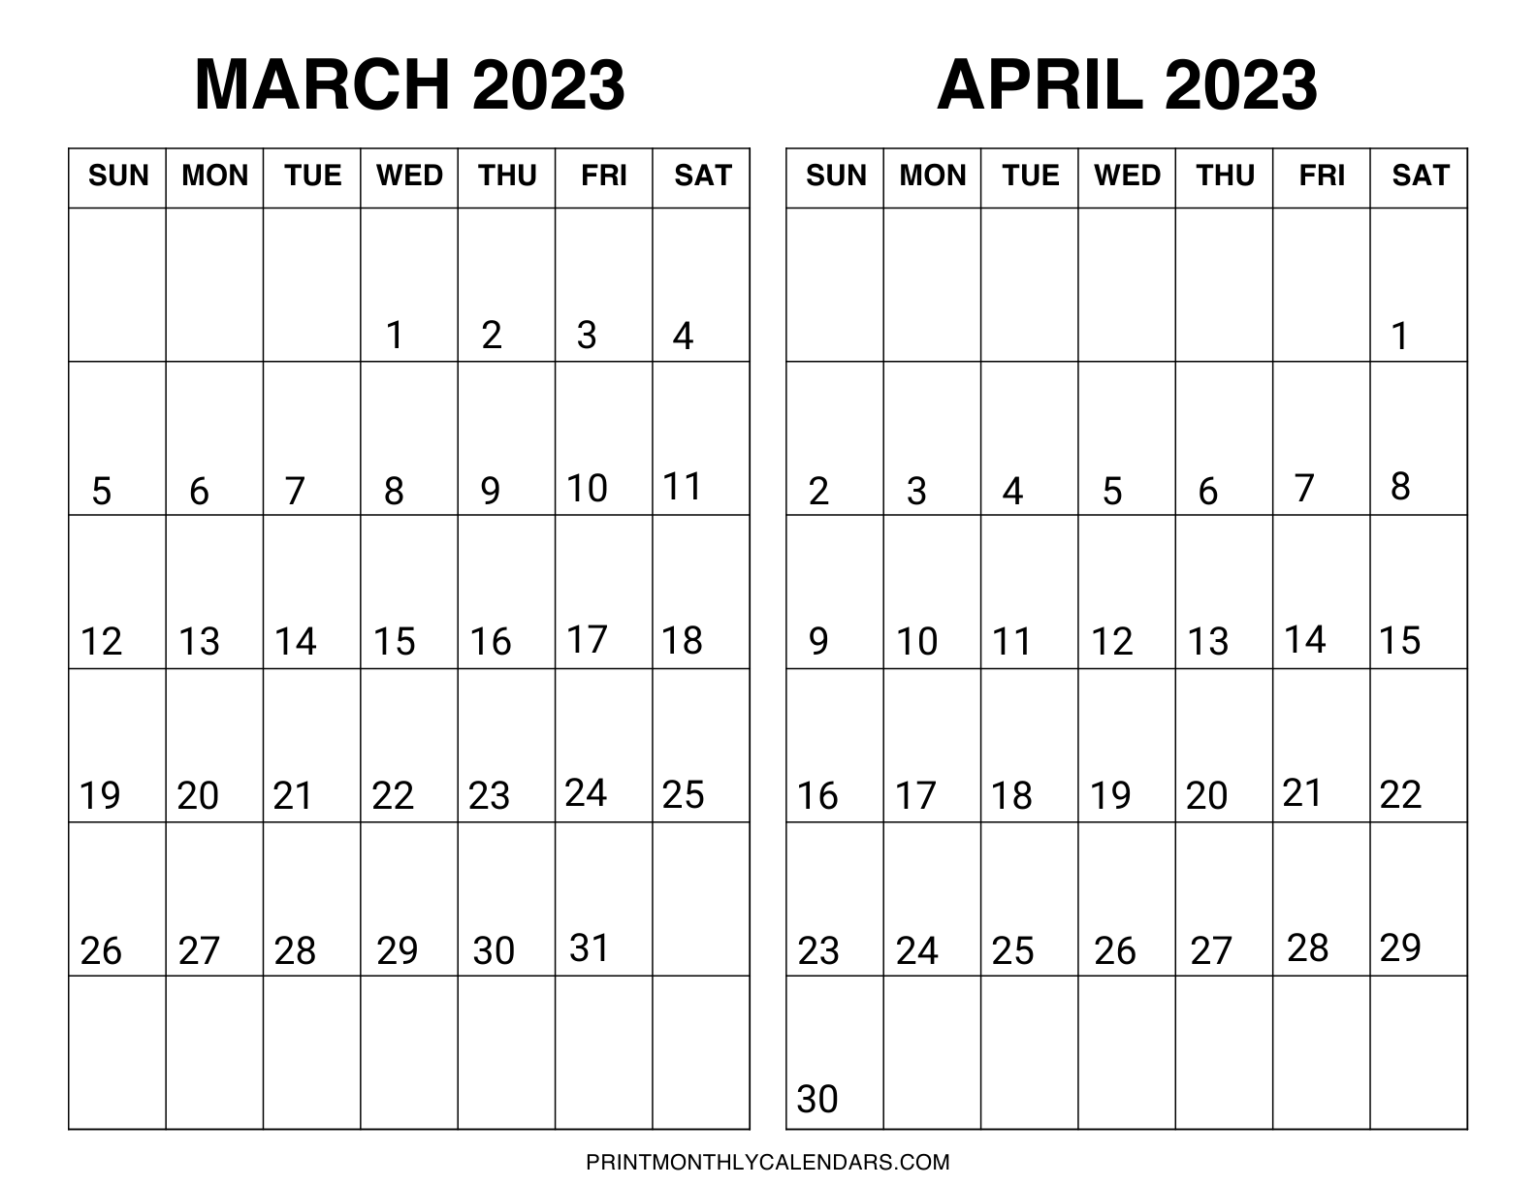 awasome-2023-calendar-december-2022-calendar-with-holidays-printable-2023